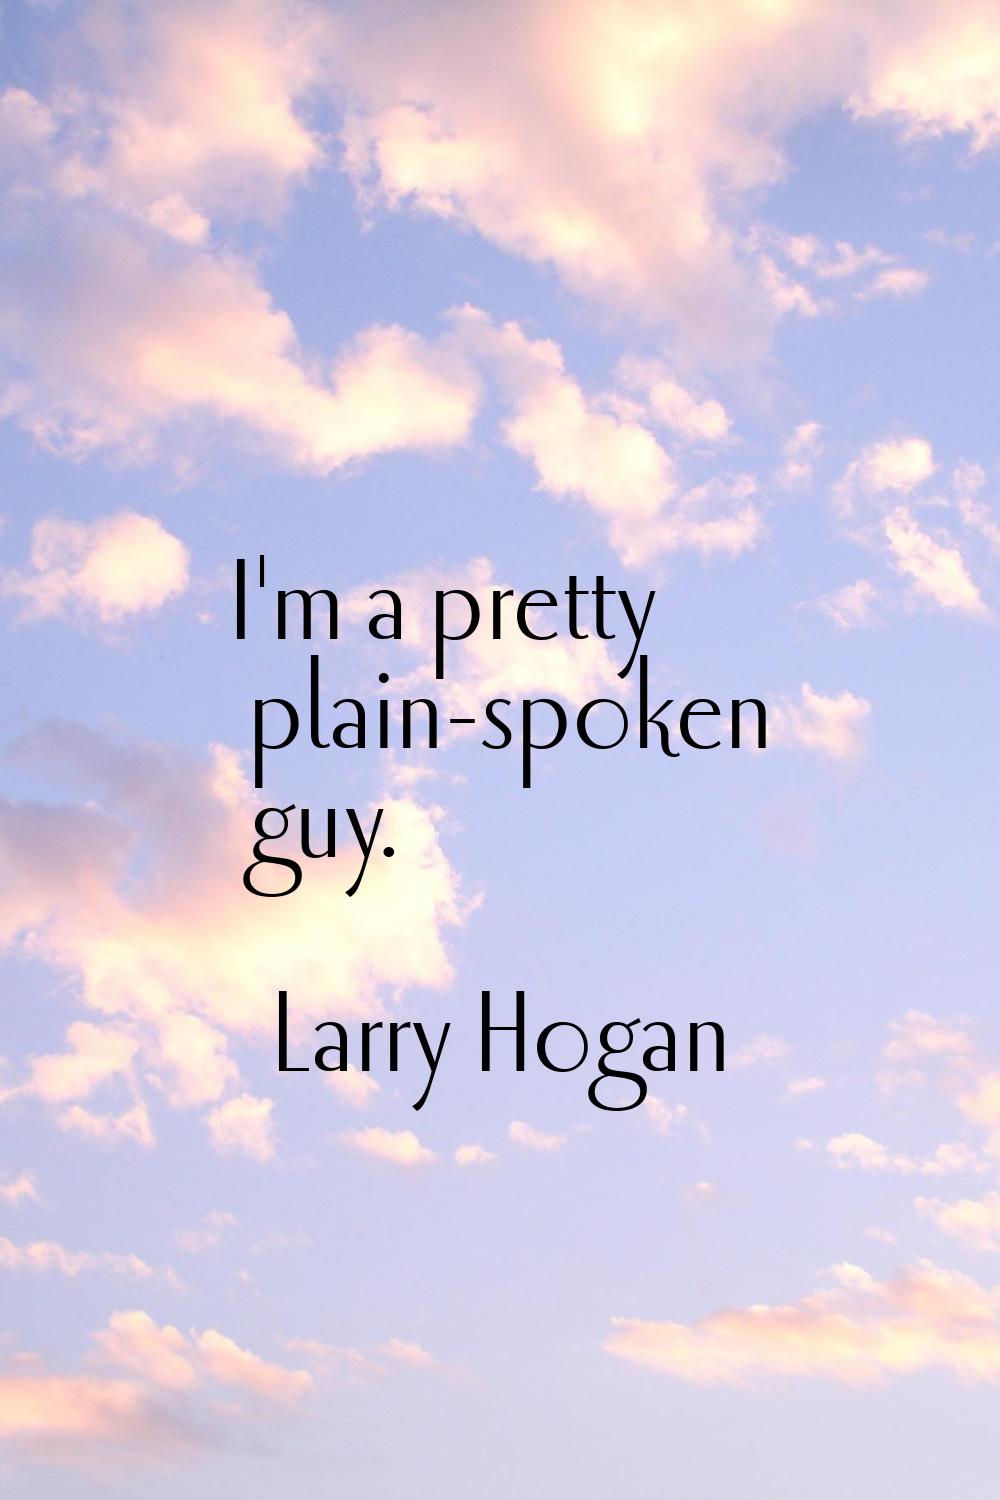 I'm a pretty plain-spoken guy.